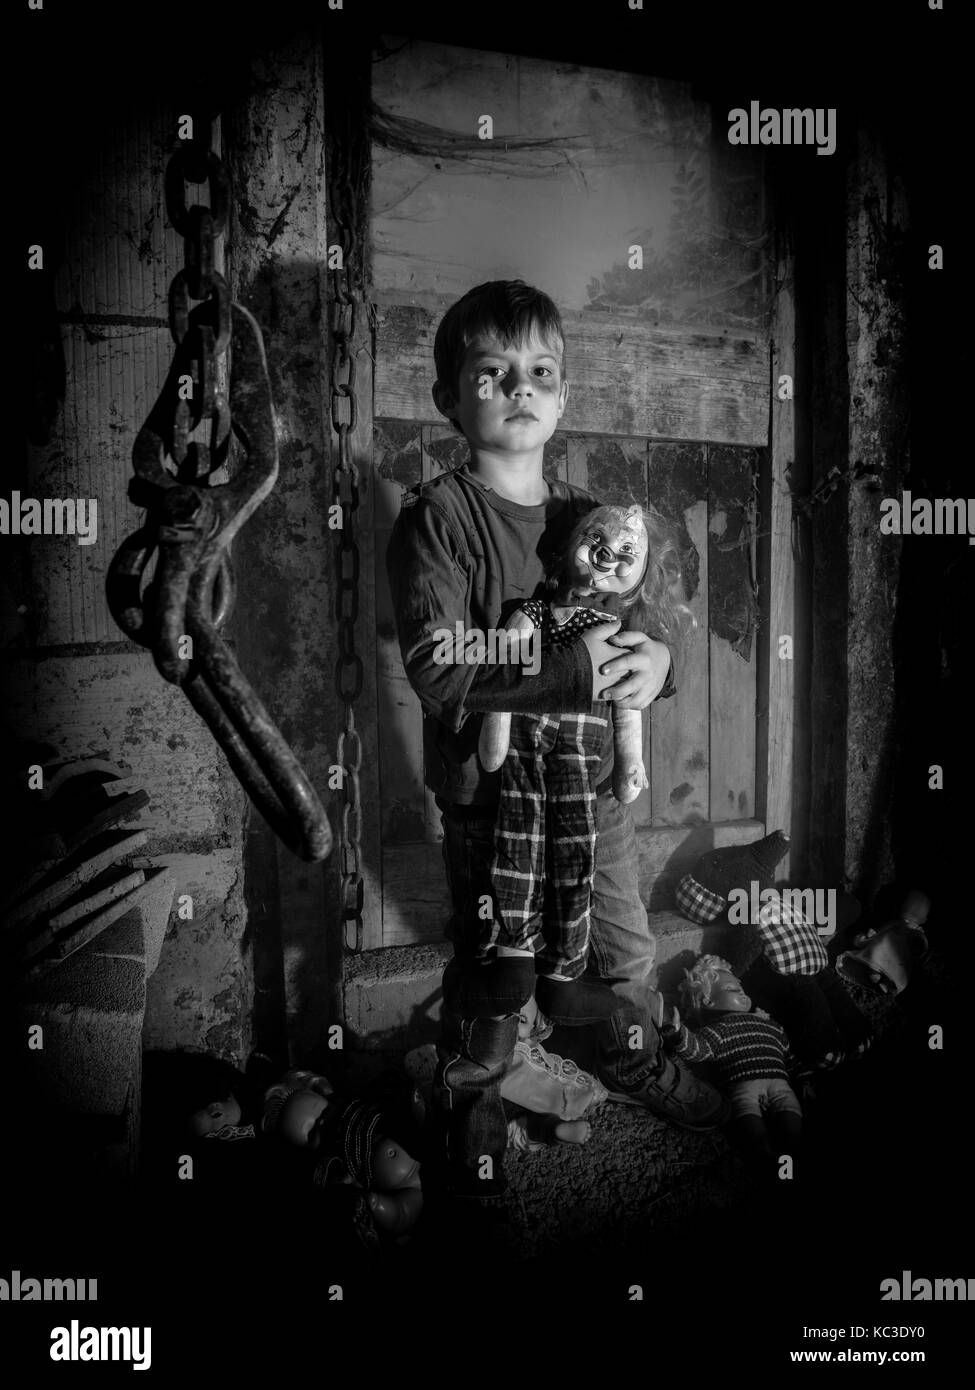 Foto von einem gruseligen Junge mit einem alten clown Puppe in einer alten Scheune in Spinnweben und Staub bedeckt. Stockfoto